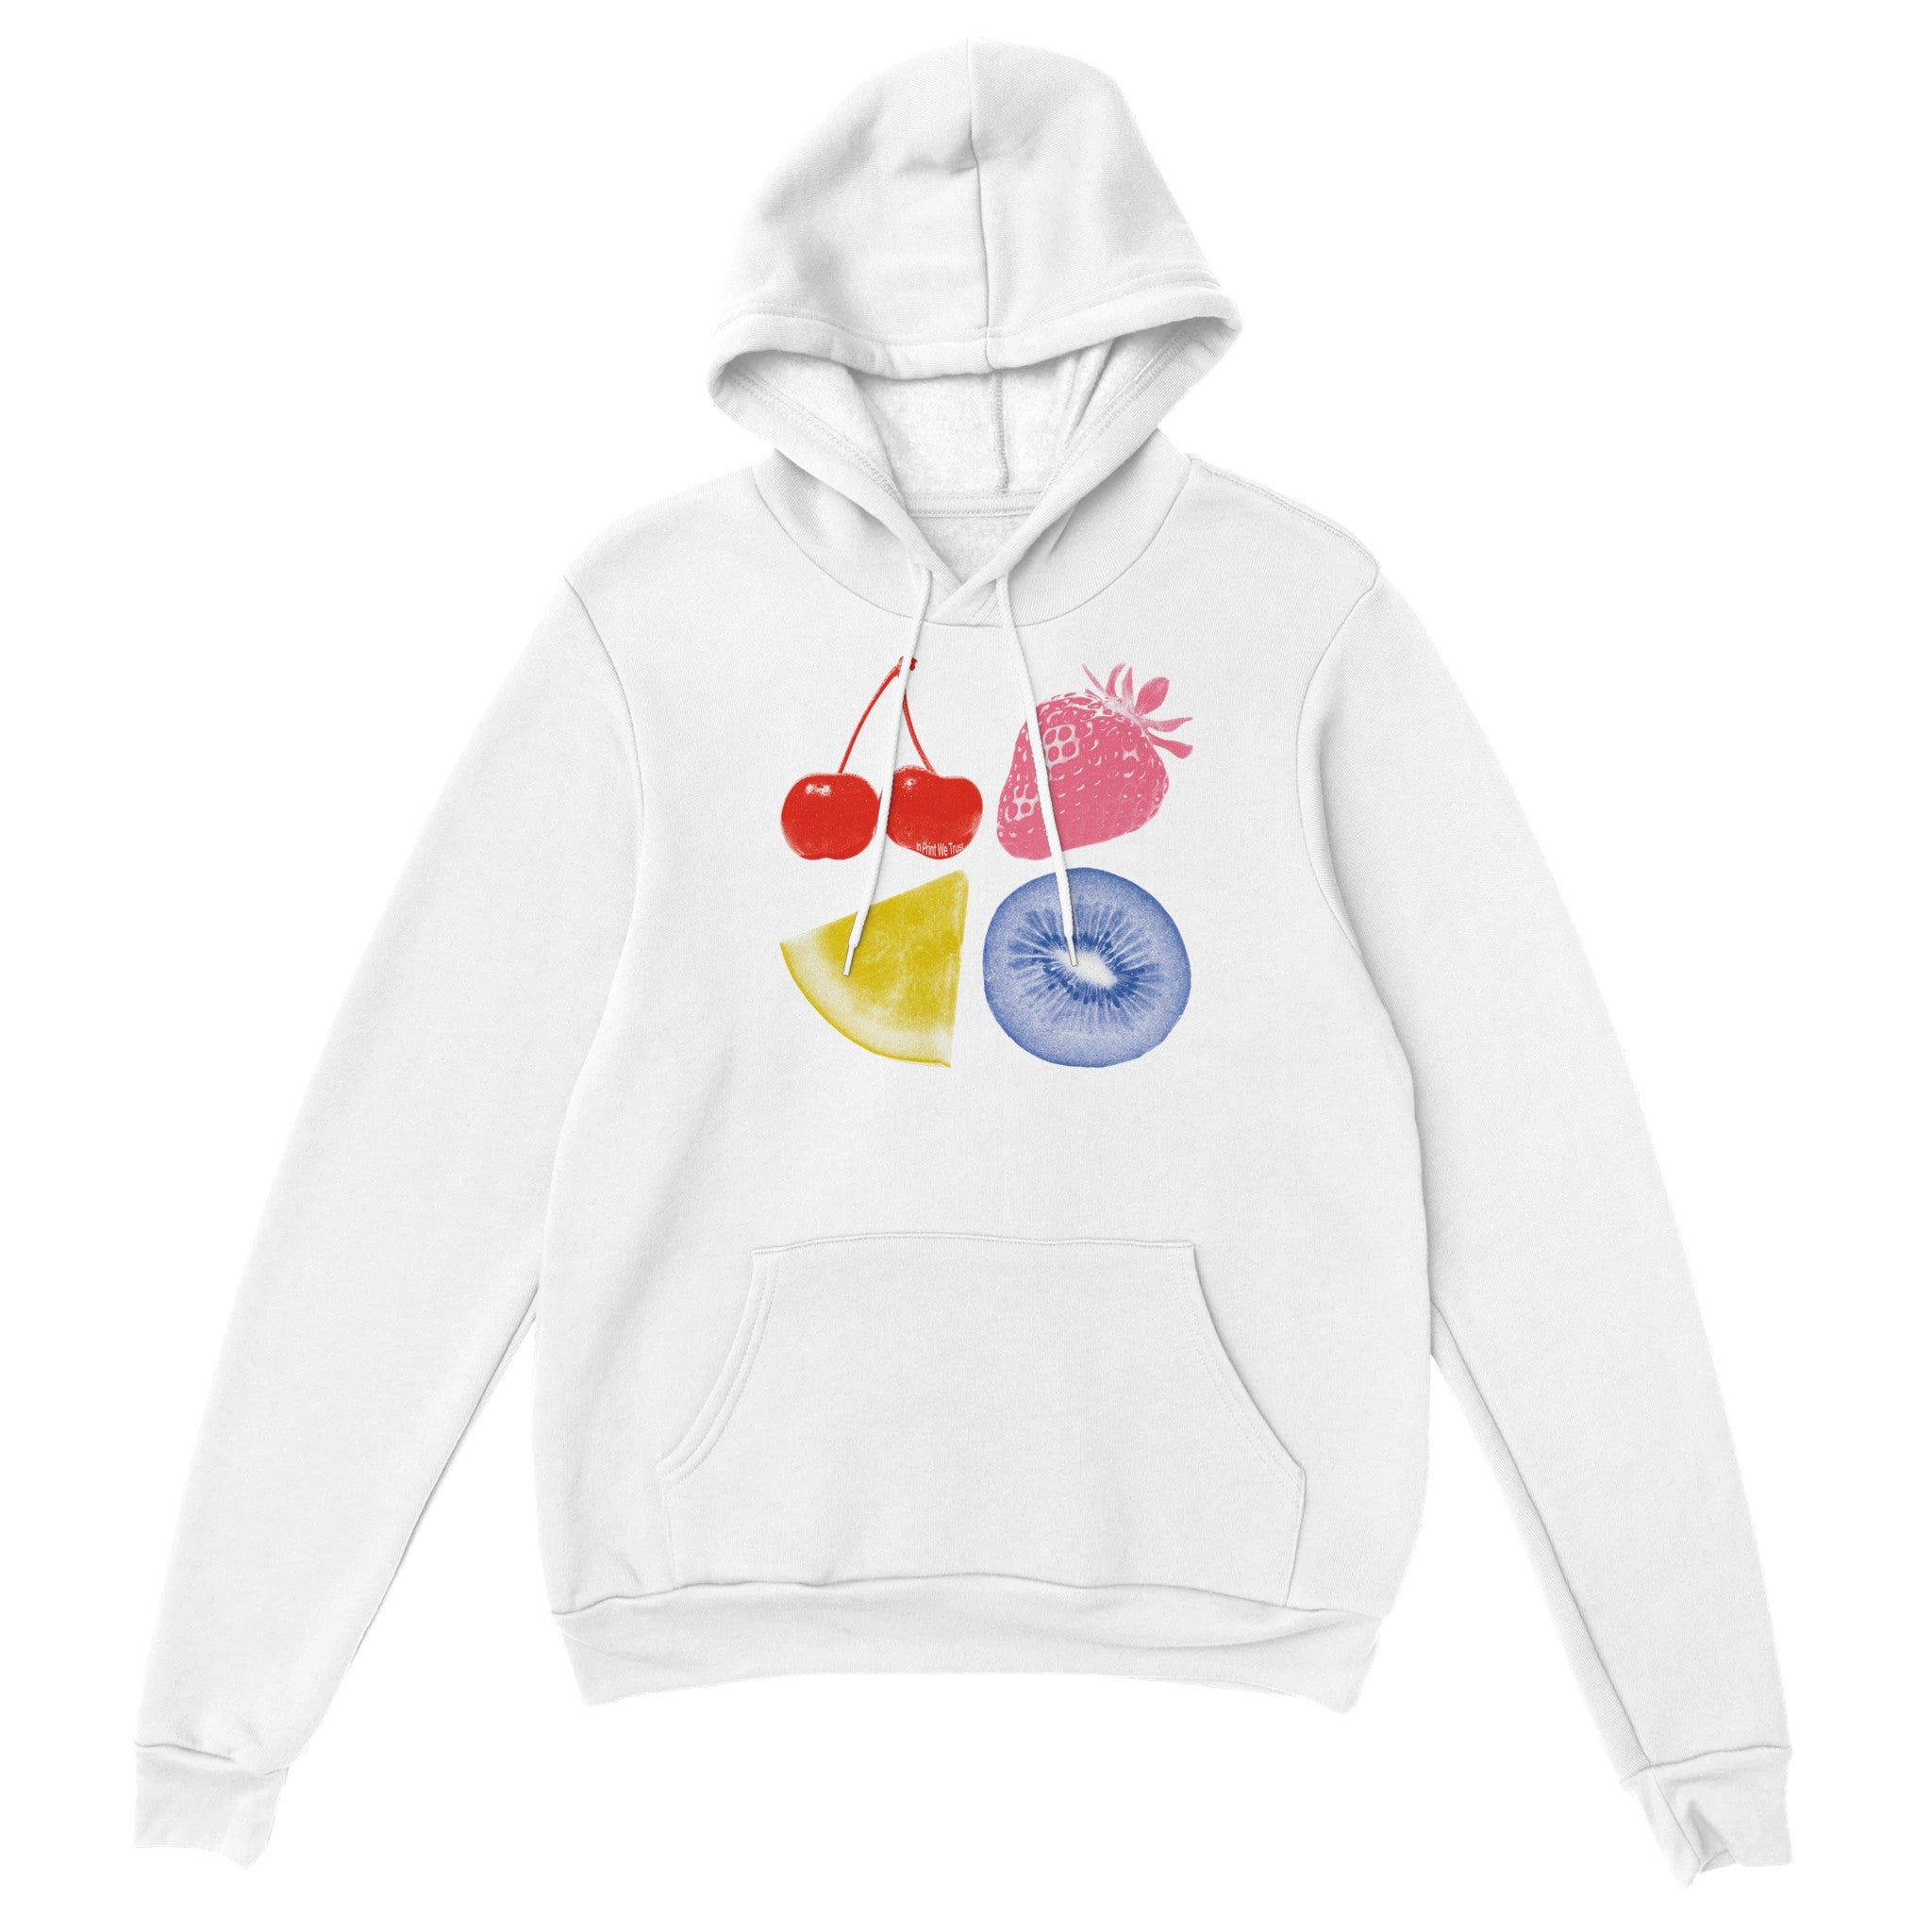 'Fruit Man' hoodie - In Print We Trust